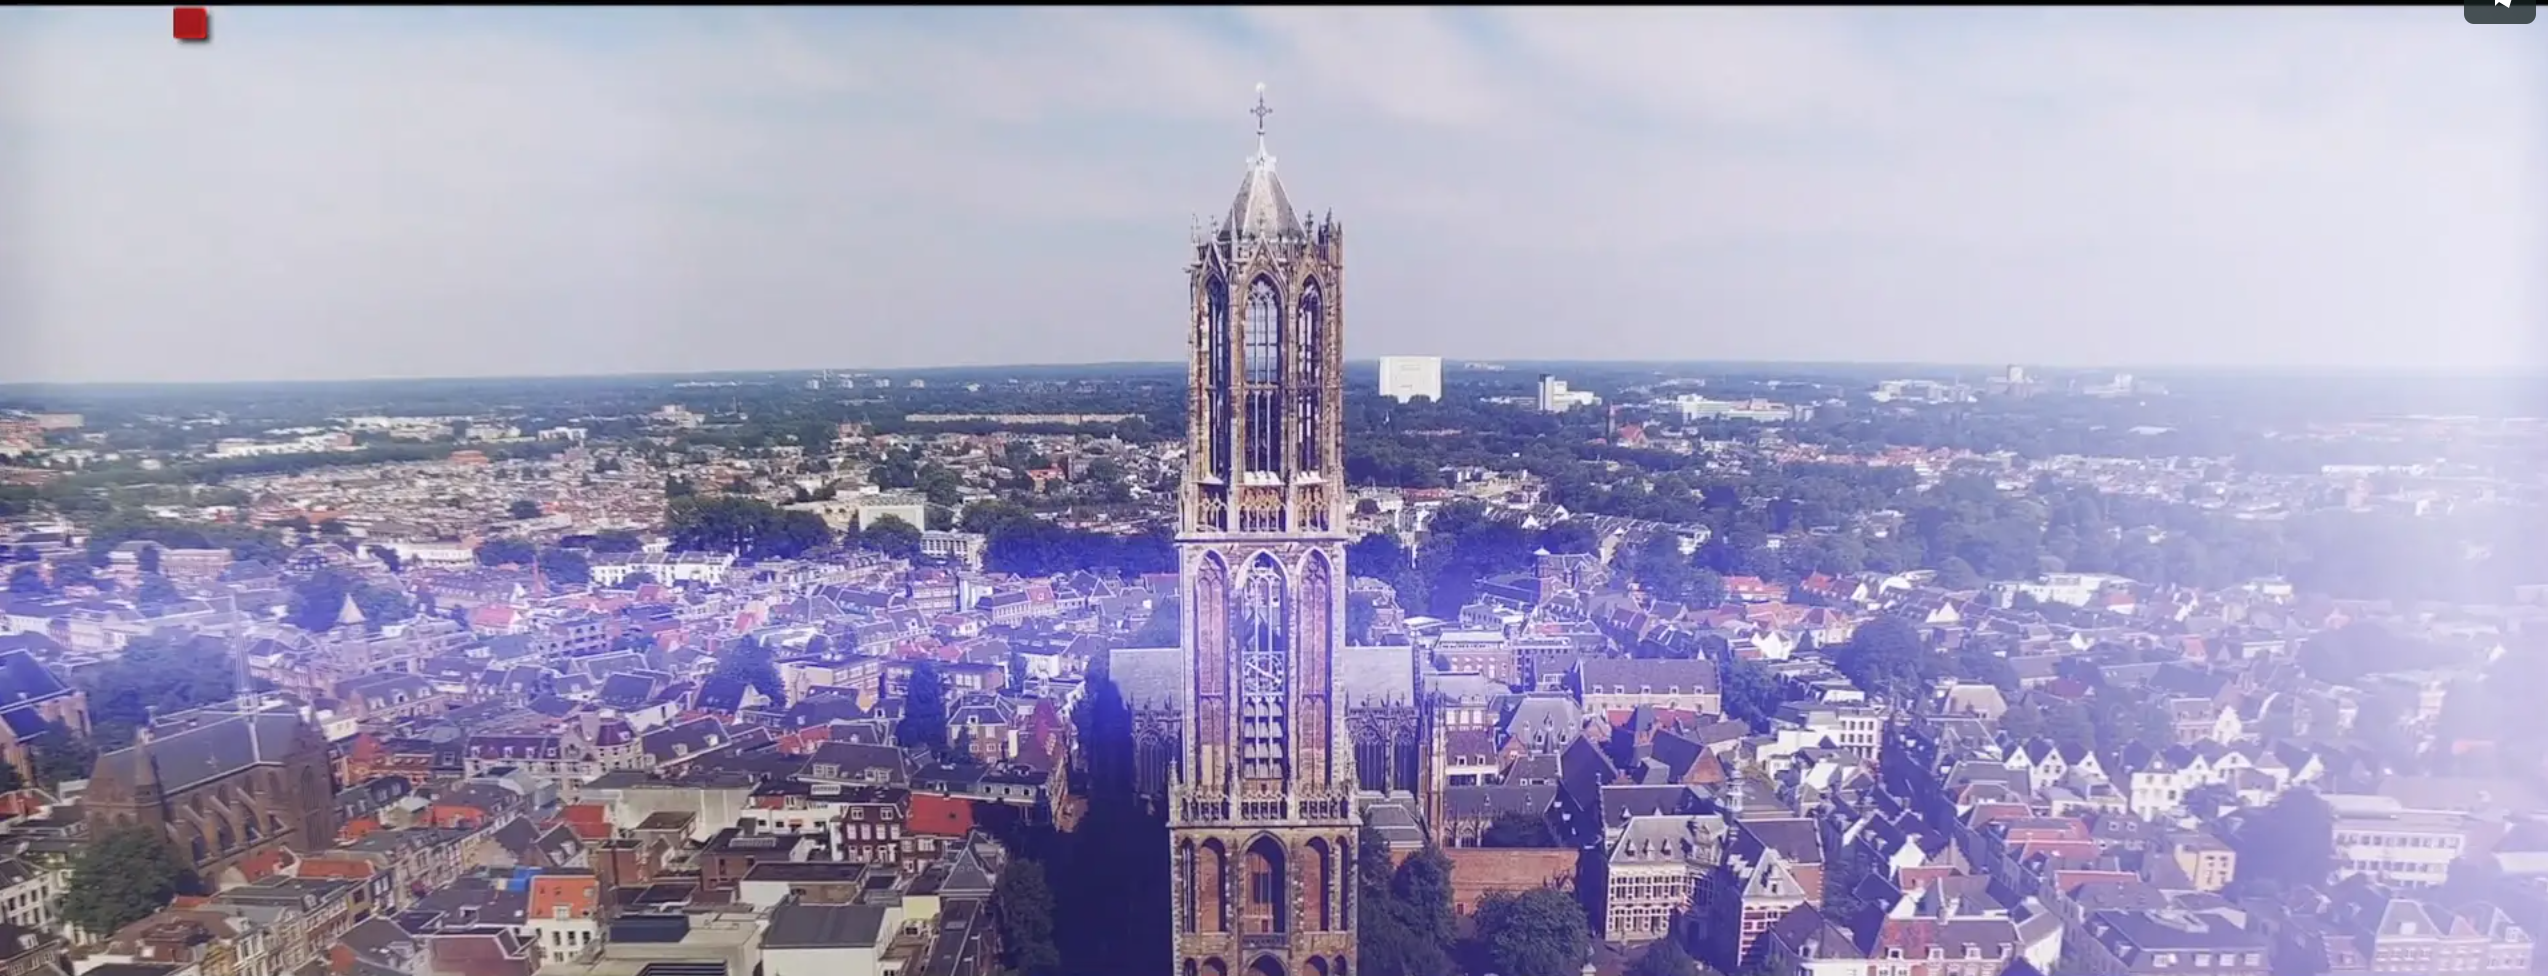 Domtoren van Utrecht – Het hoogste punt